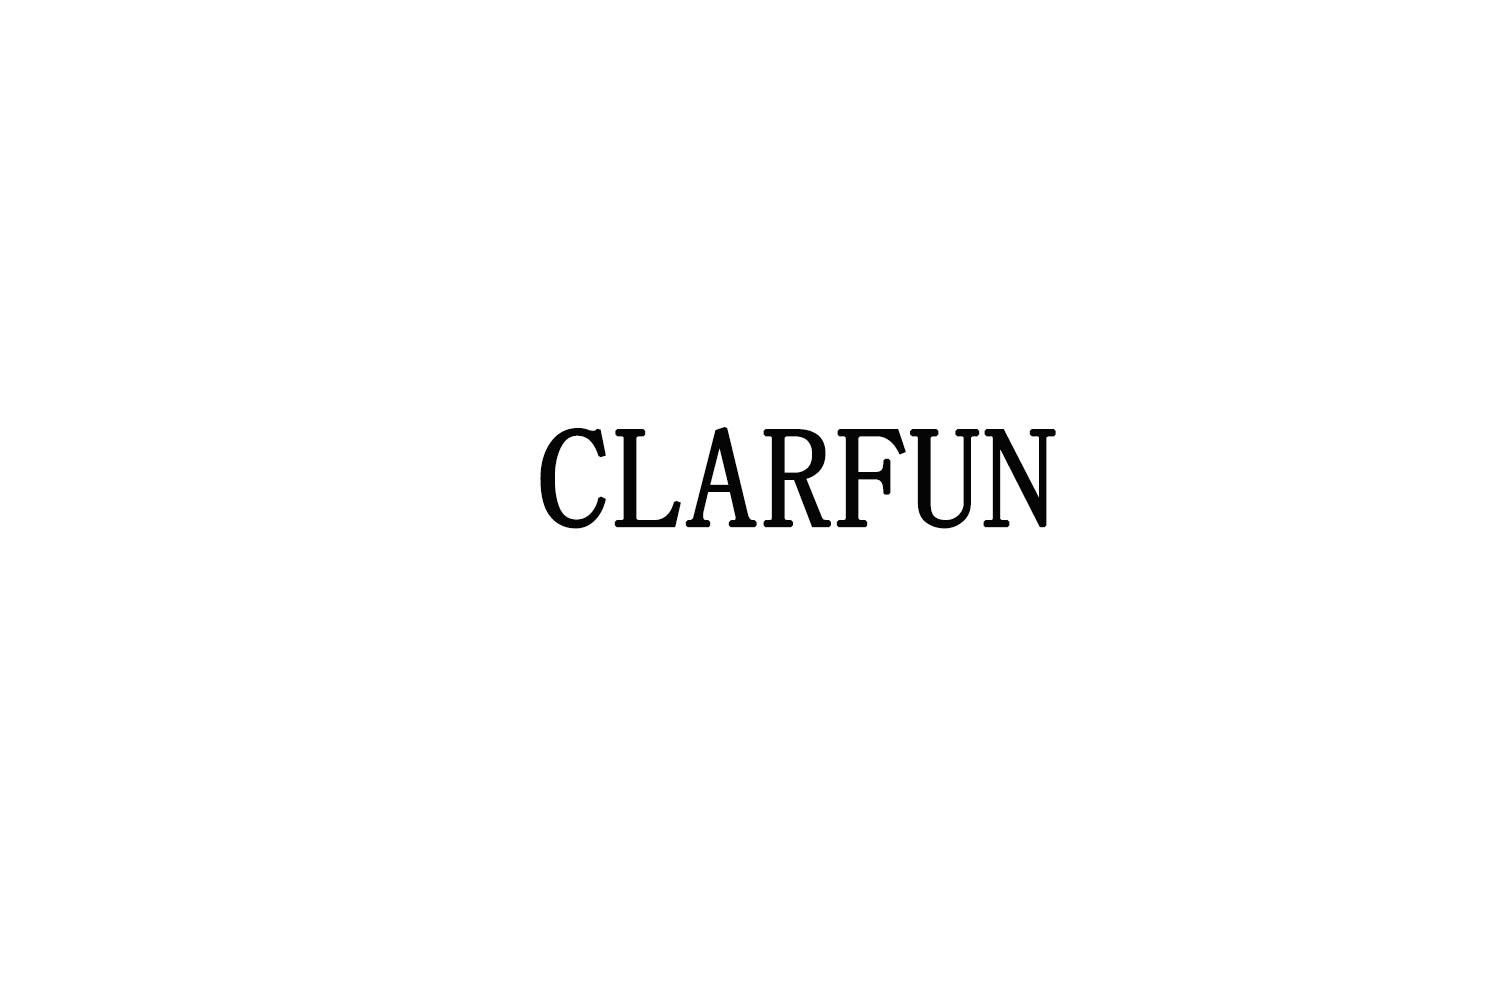 CLARFUN